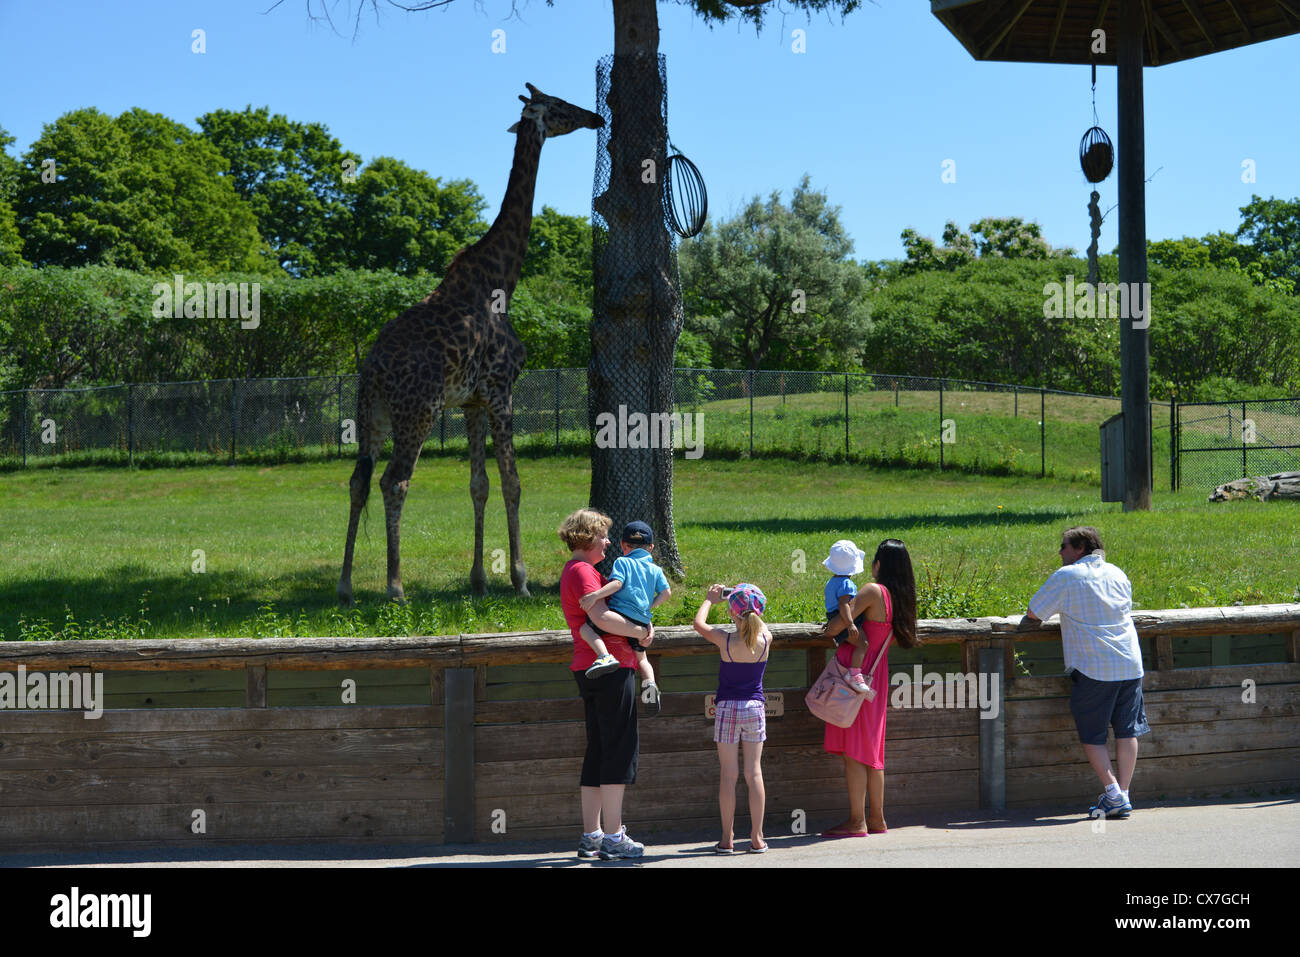 Esta es una imagen de una jirafa en el zoo de Toronto. Foto de stock